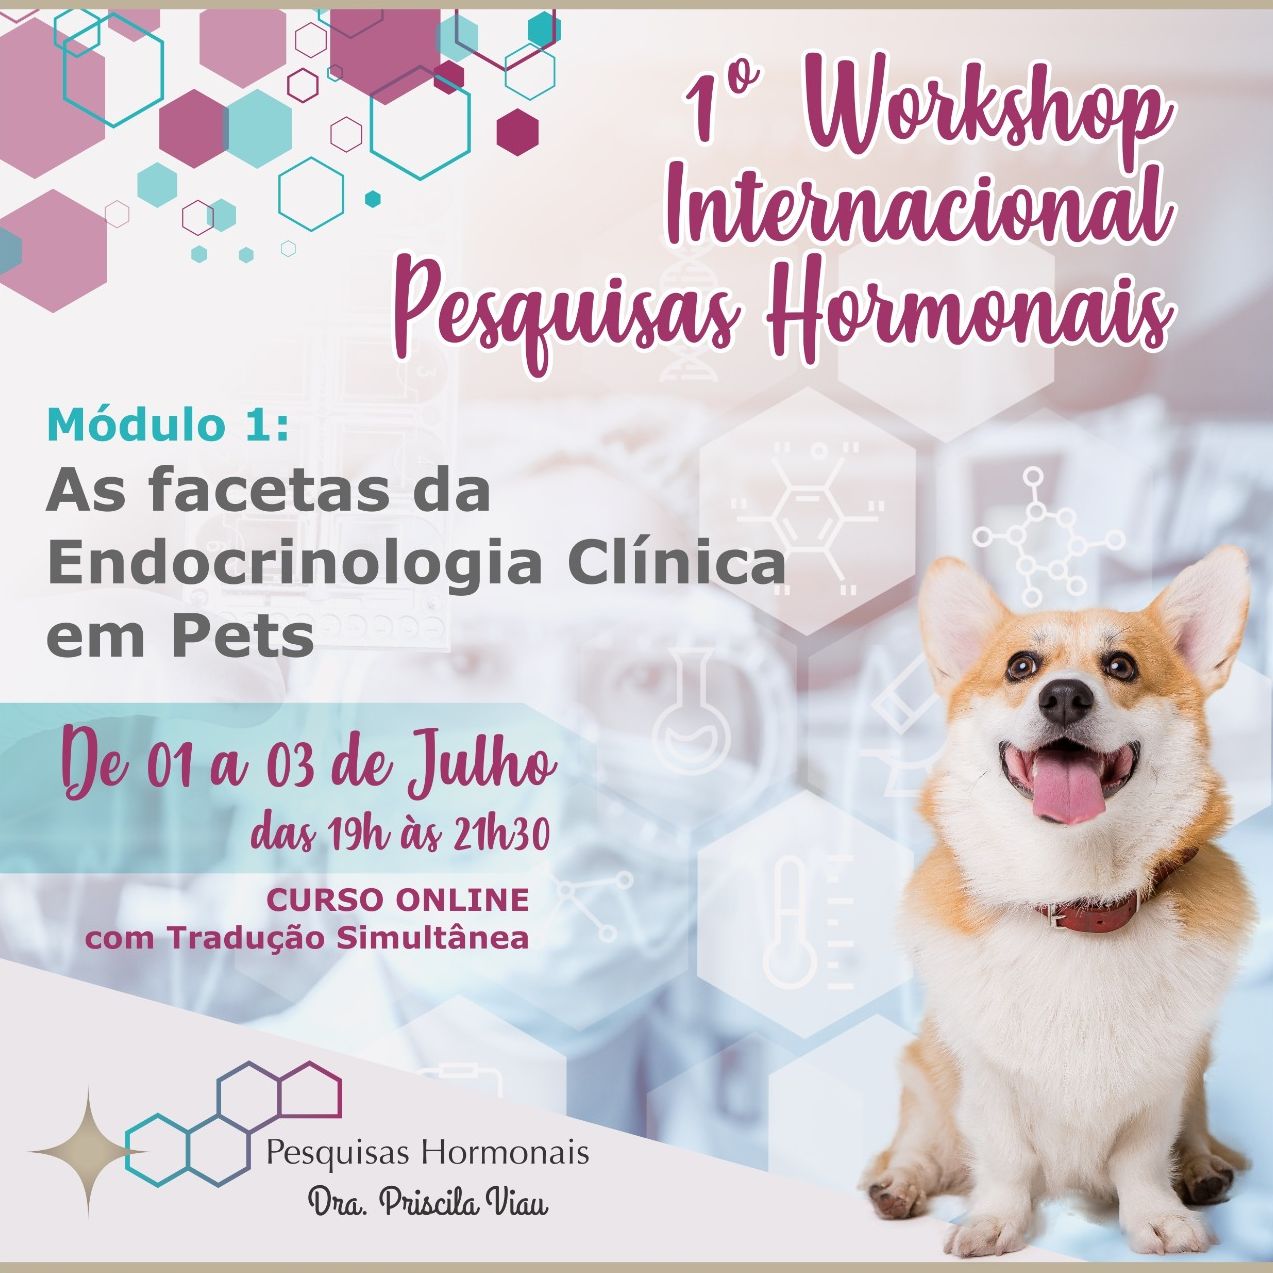 Workshop internacional Pesquisas Hormonais - mod 1